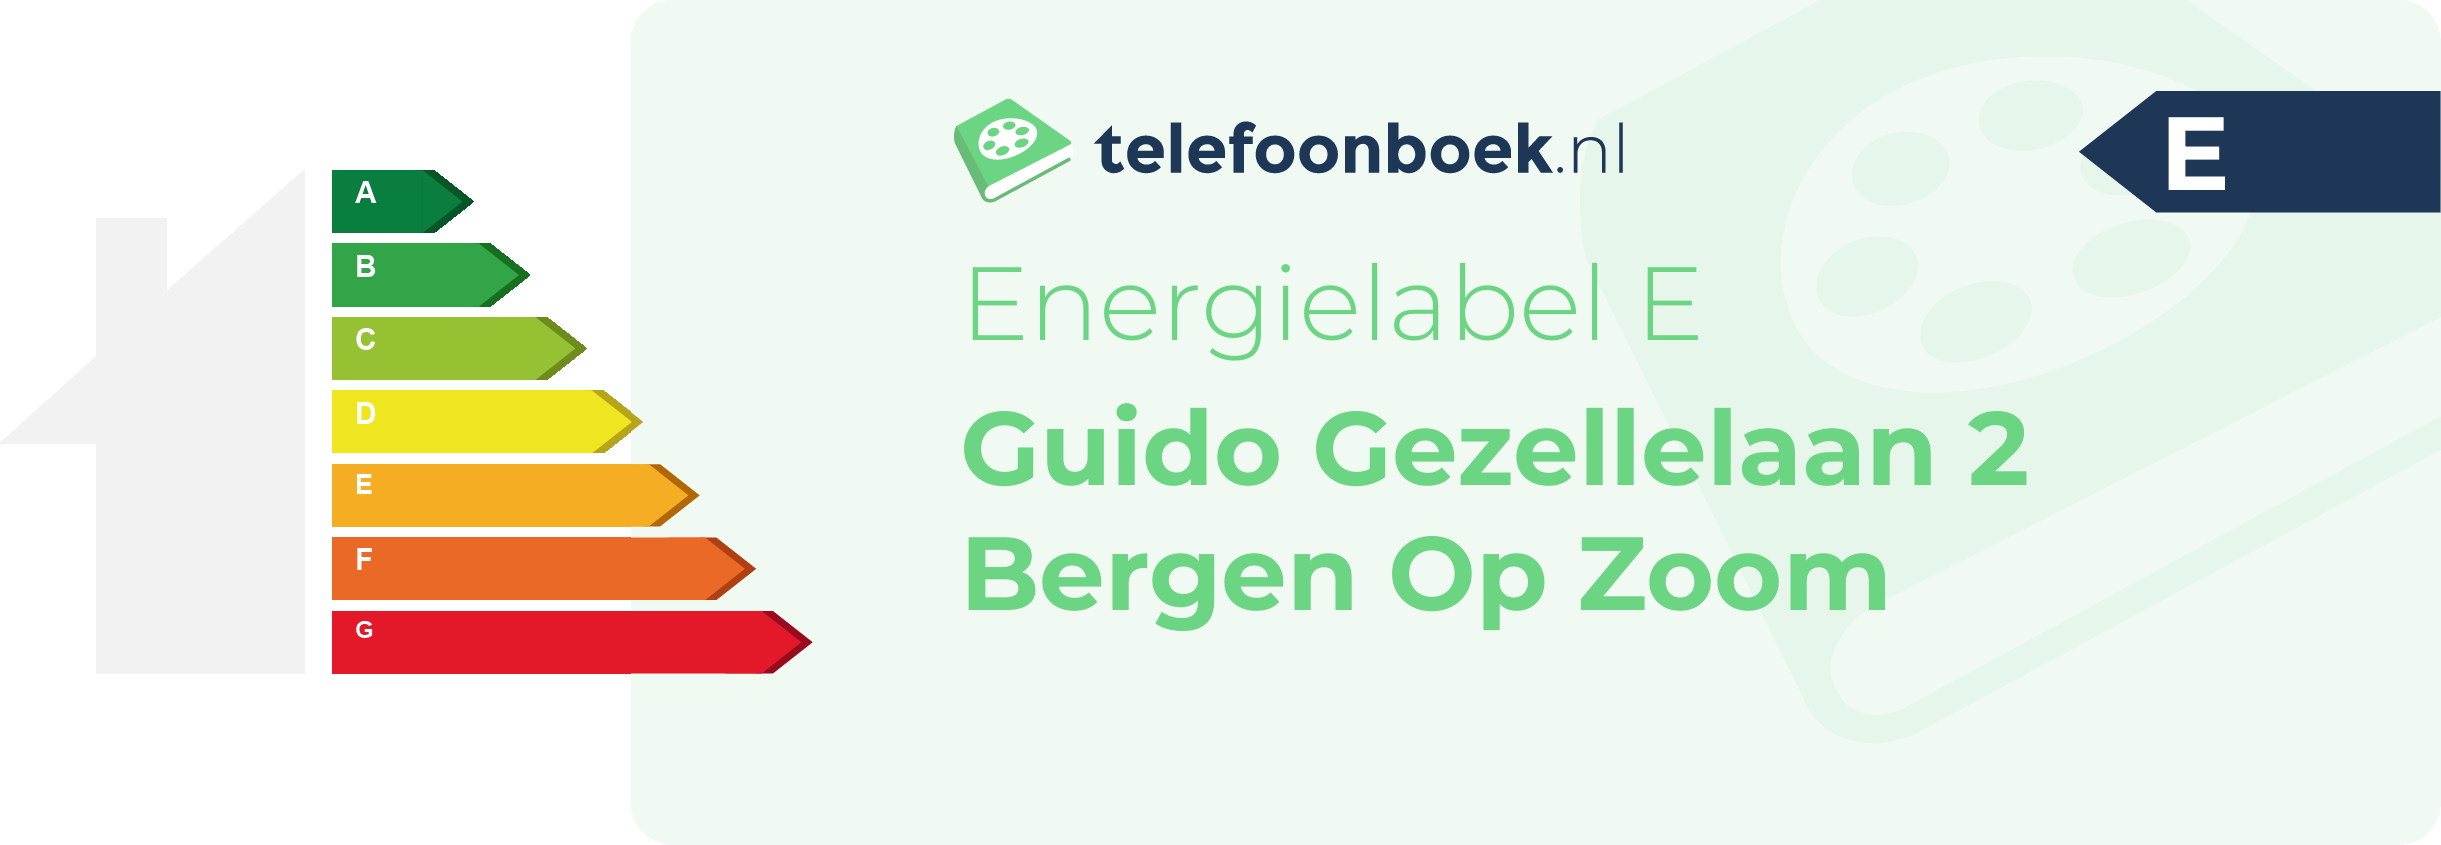 Energielabel Guido Gezellelaan 2 Bergen Op Zoom